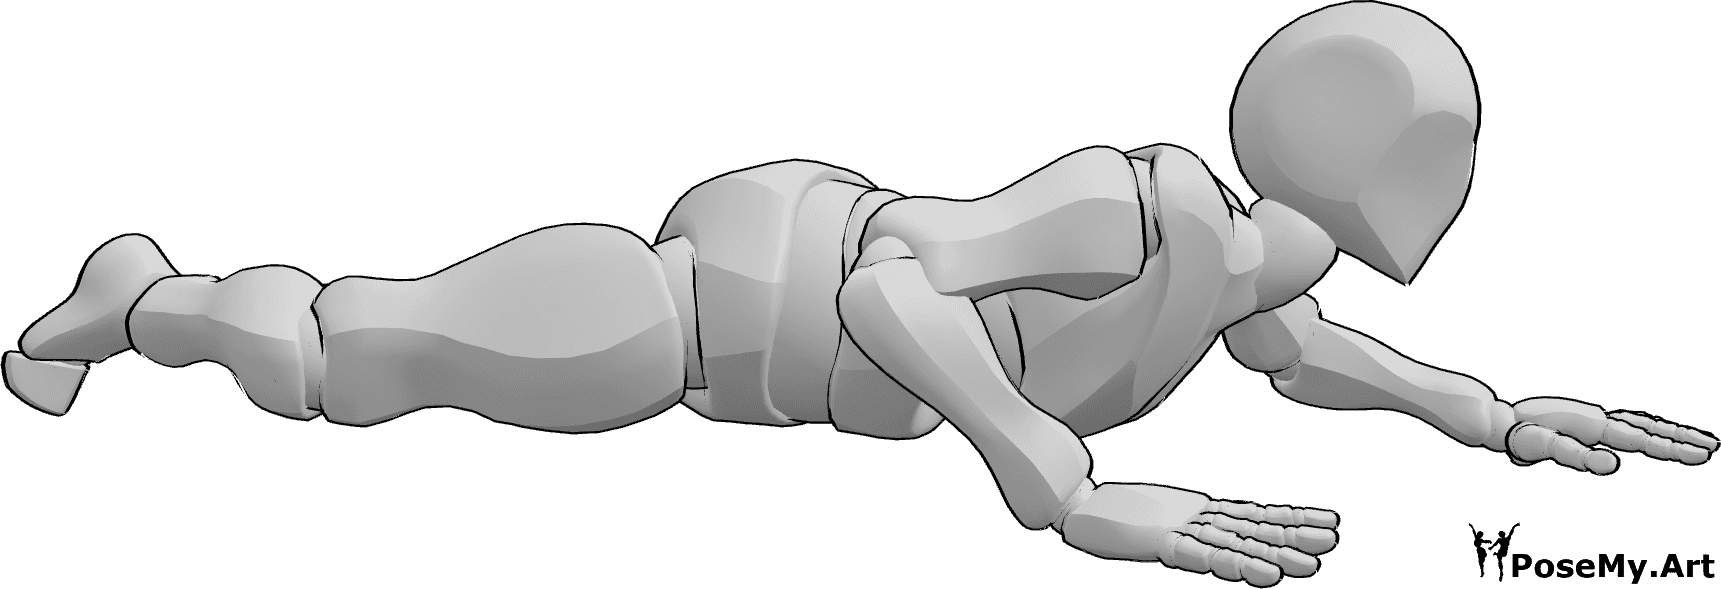 Referência de poses- Pose masculina de barriga rastejante - O macho está a rastejar de barriga para baixo, perto do chão, em pose de rastejamento